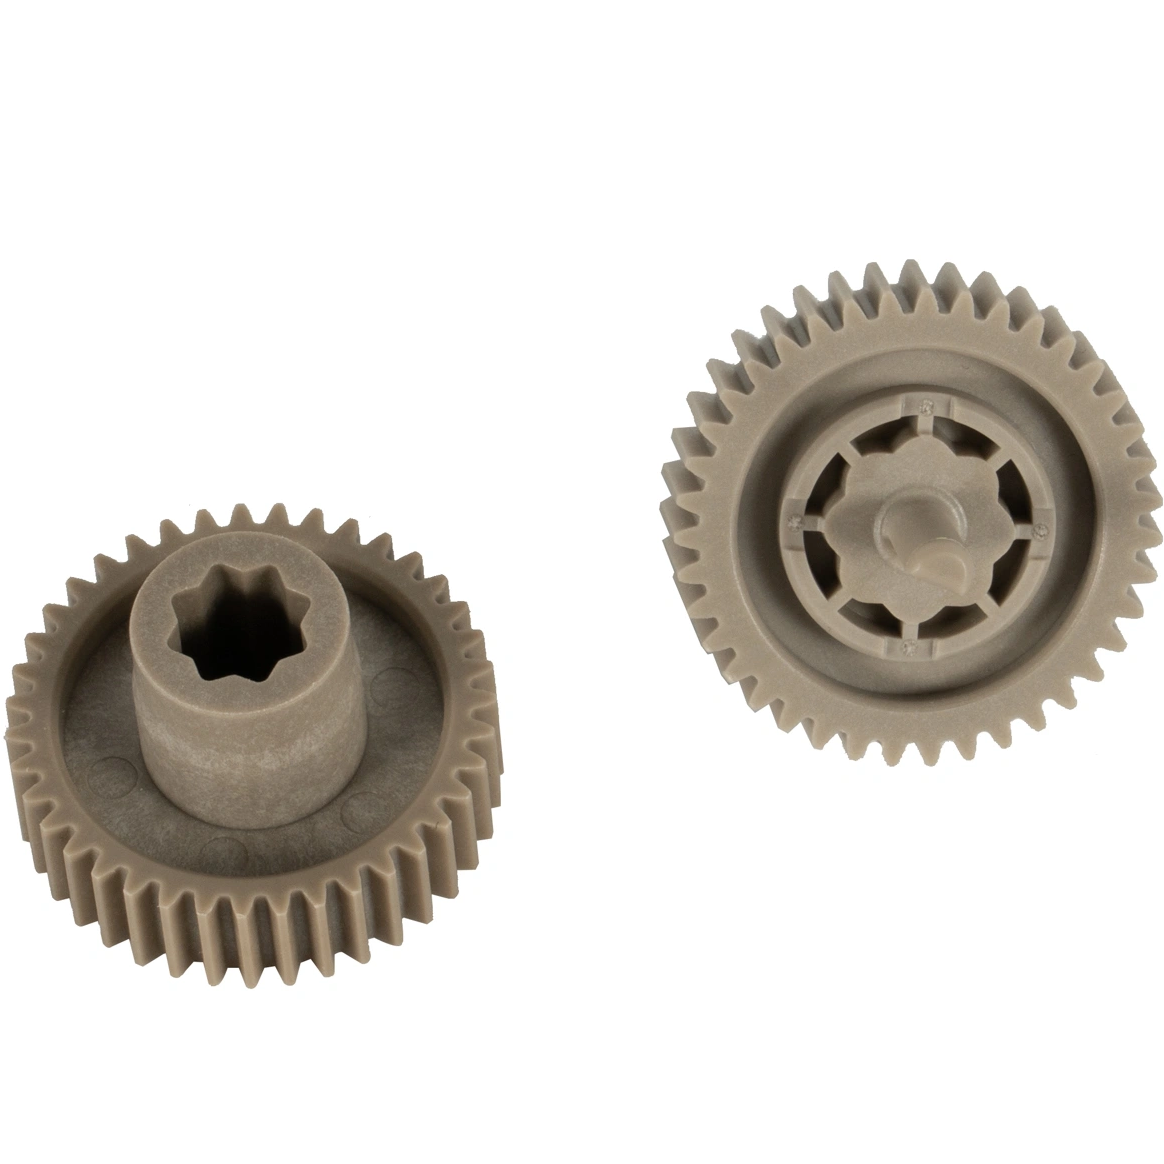 Piezas estructurales de la transmisión material de la rueda dentada de los componentes del hardware de la precisión de Dobond